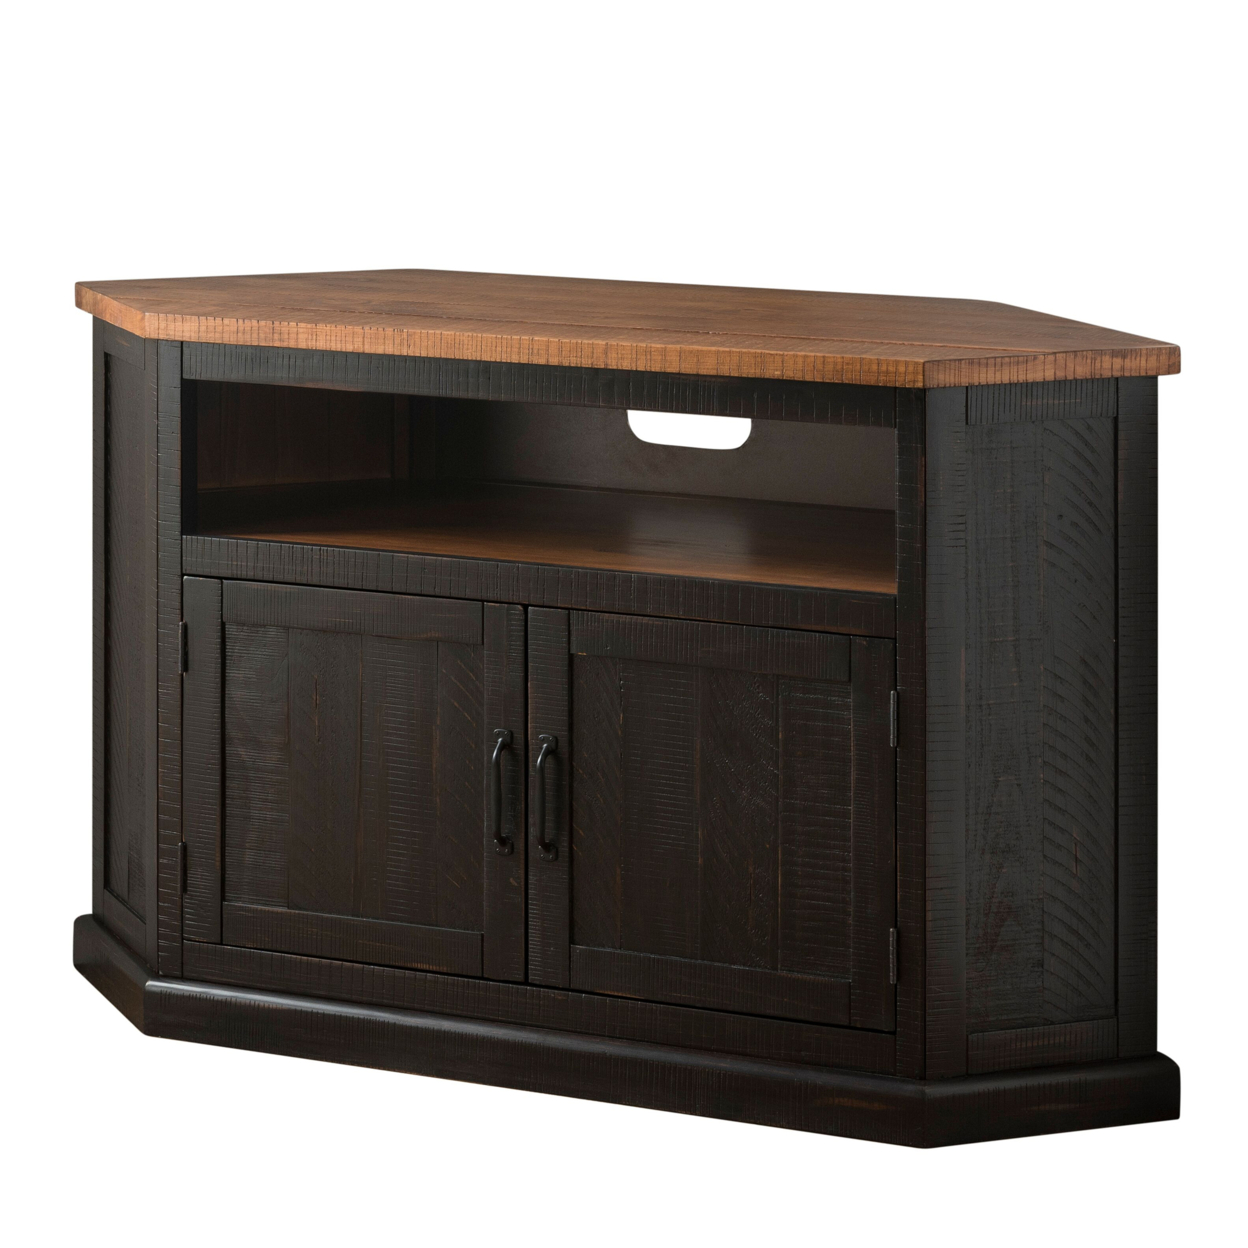 Rustic Style Wooden Corner TV Stand With 2 Door Cabinet, Brown- Saltoro Sherpi